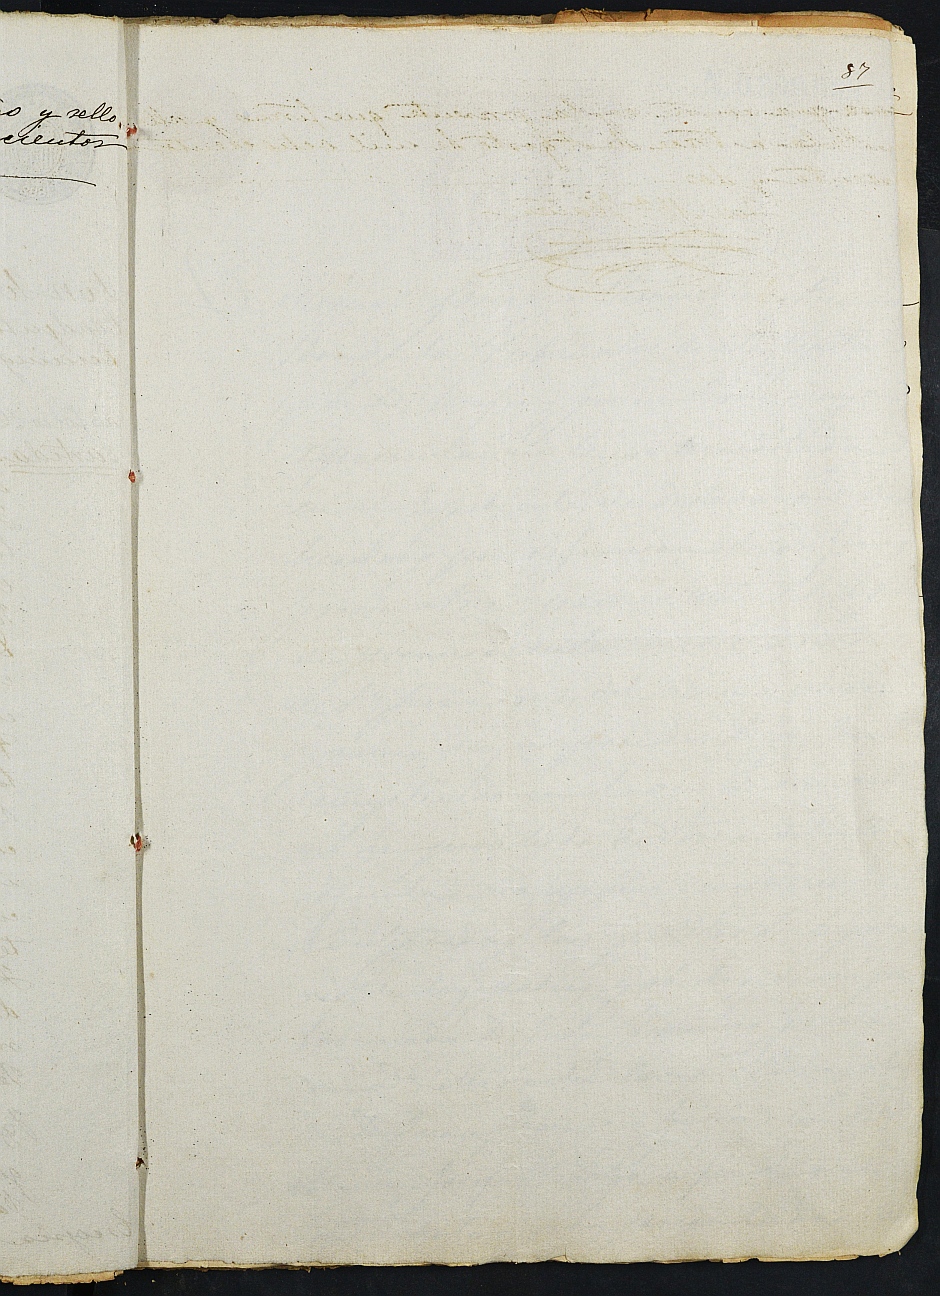 Declaración de herederos s.n./1893 del Juzgado del Distrito de San Juan de Murcia, por defunción de Ginés García Arce.